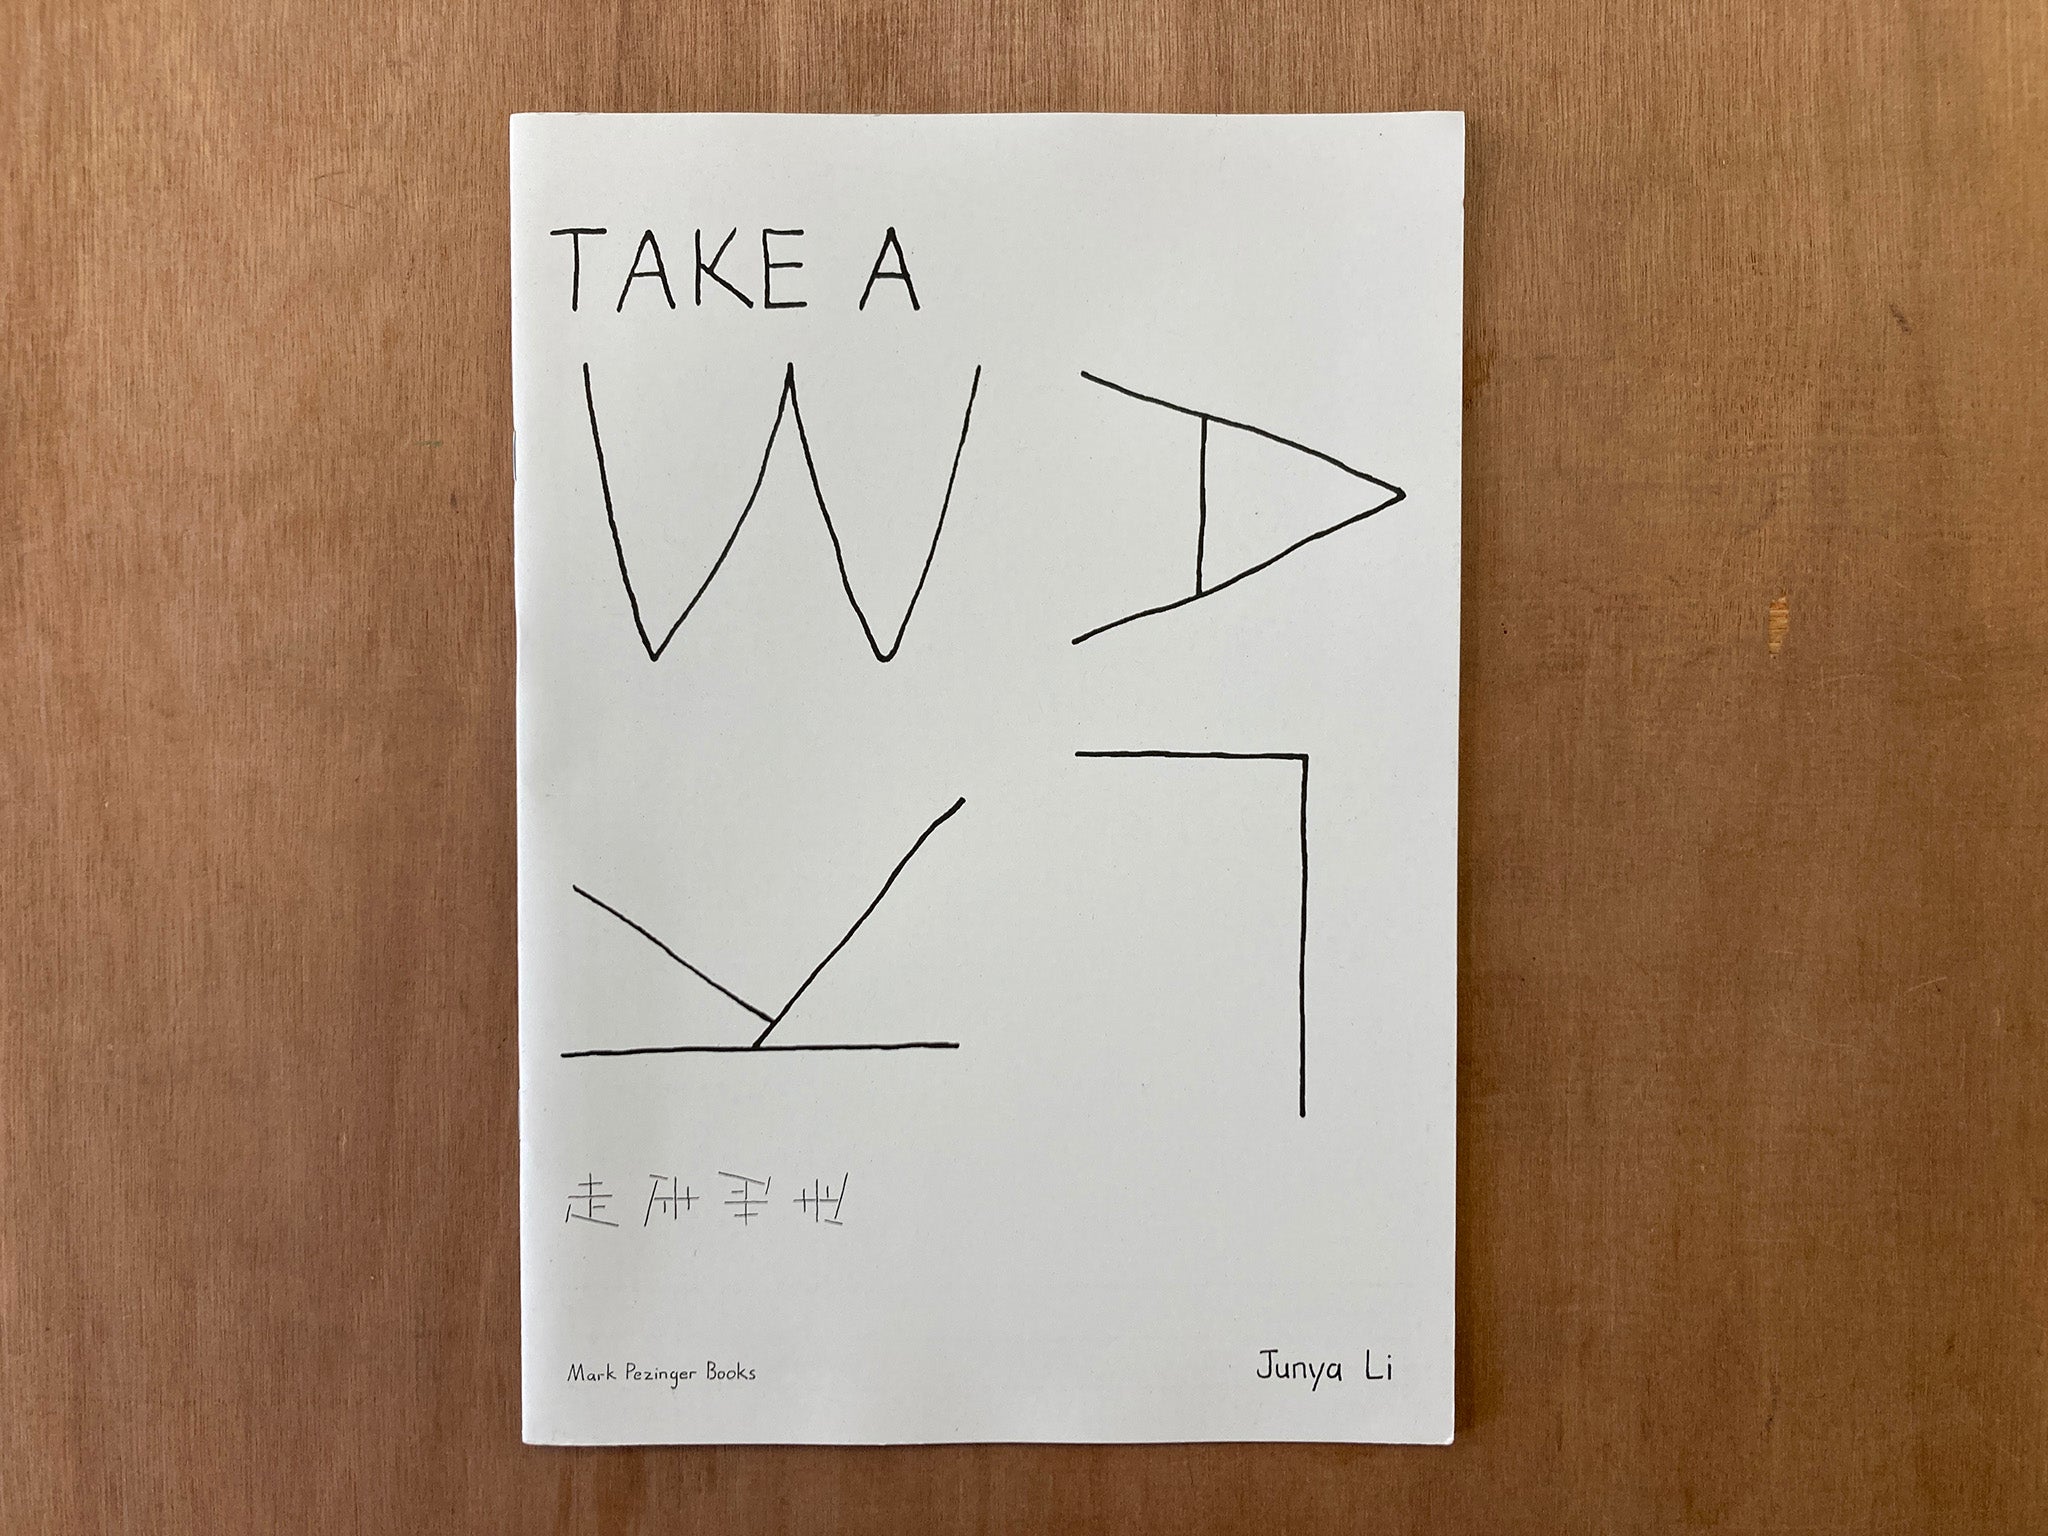 TAKE A WALK by Junya Li